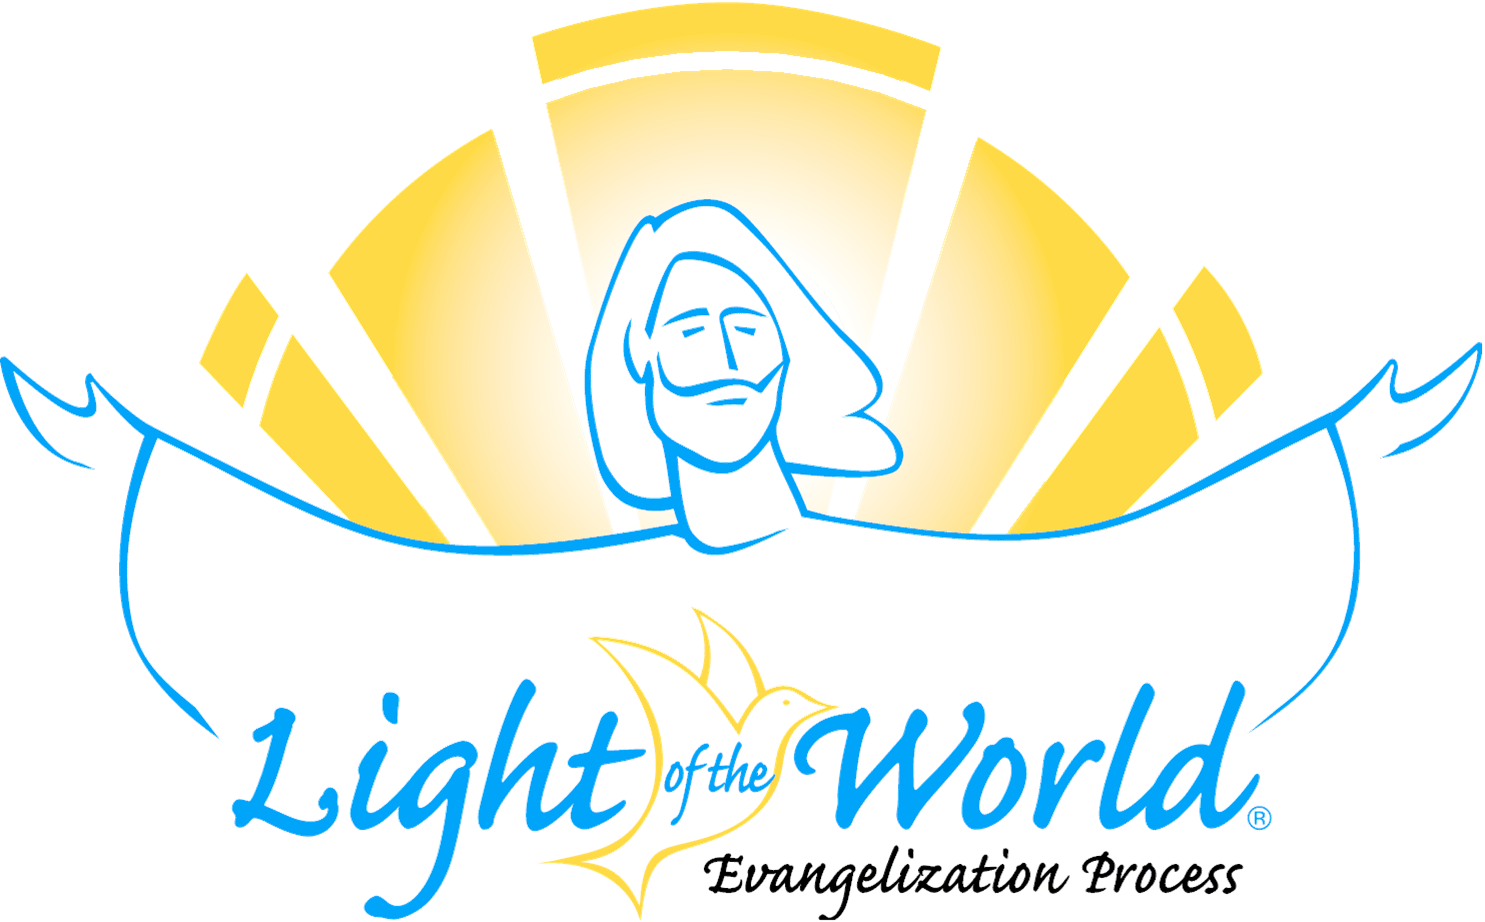 World of Light Blue Logo - Light of the World